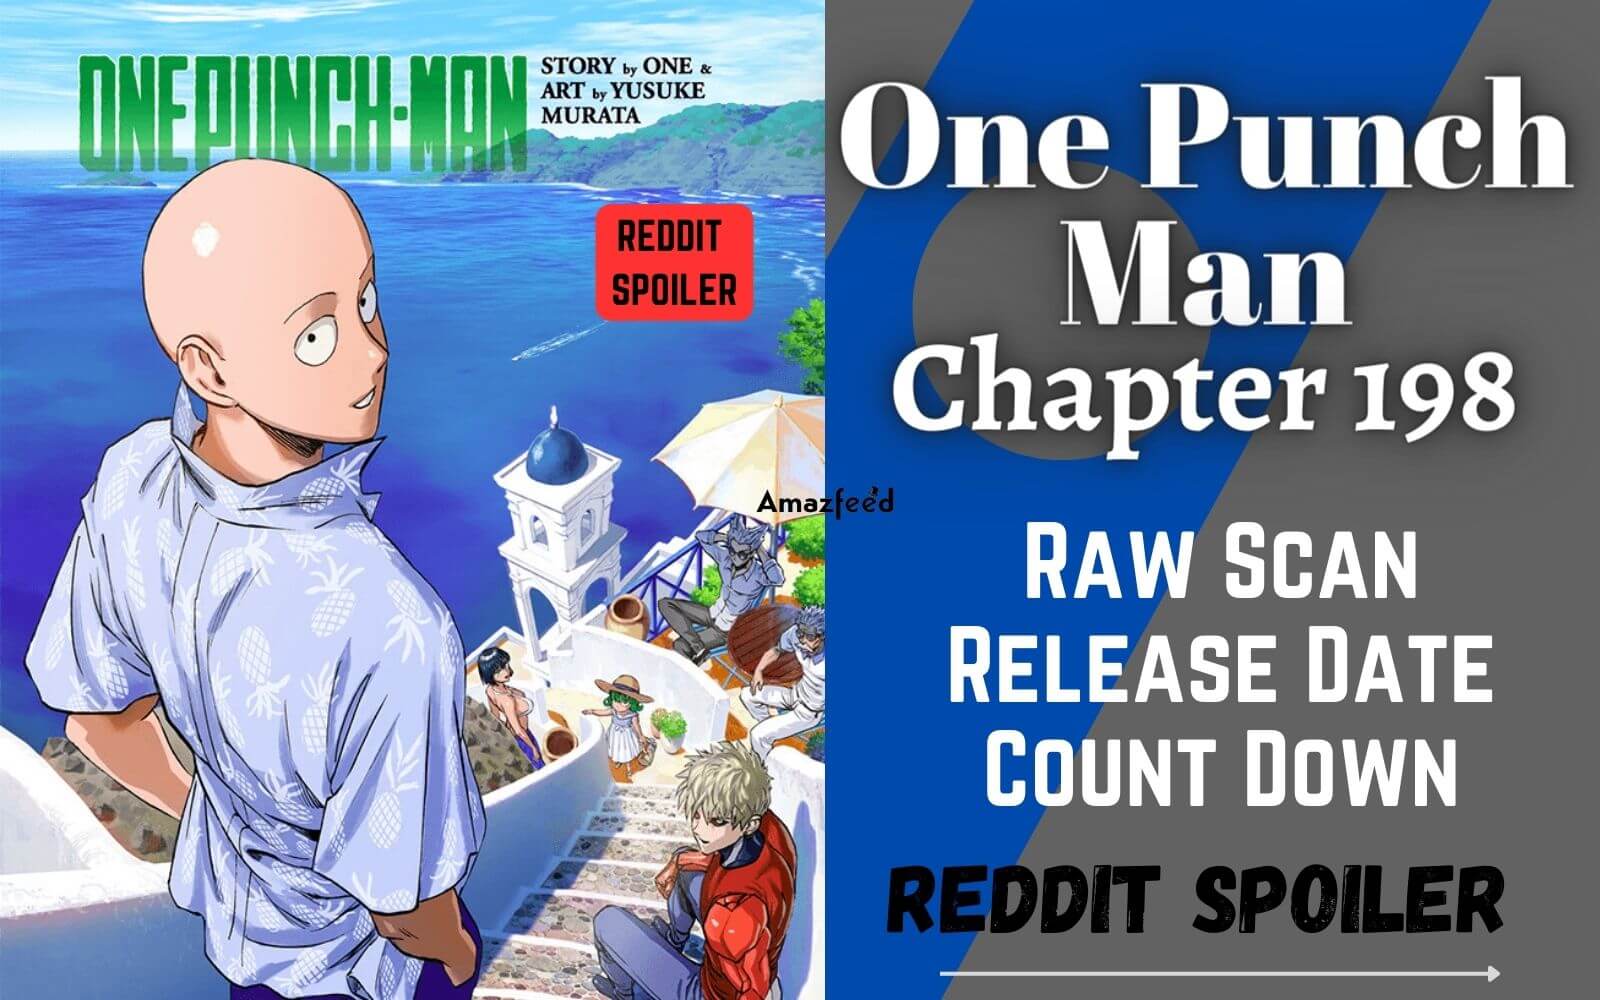 One Punch Man, capítulo 198  Data de lançamento, o que esperar e mais